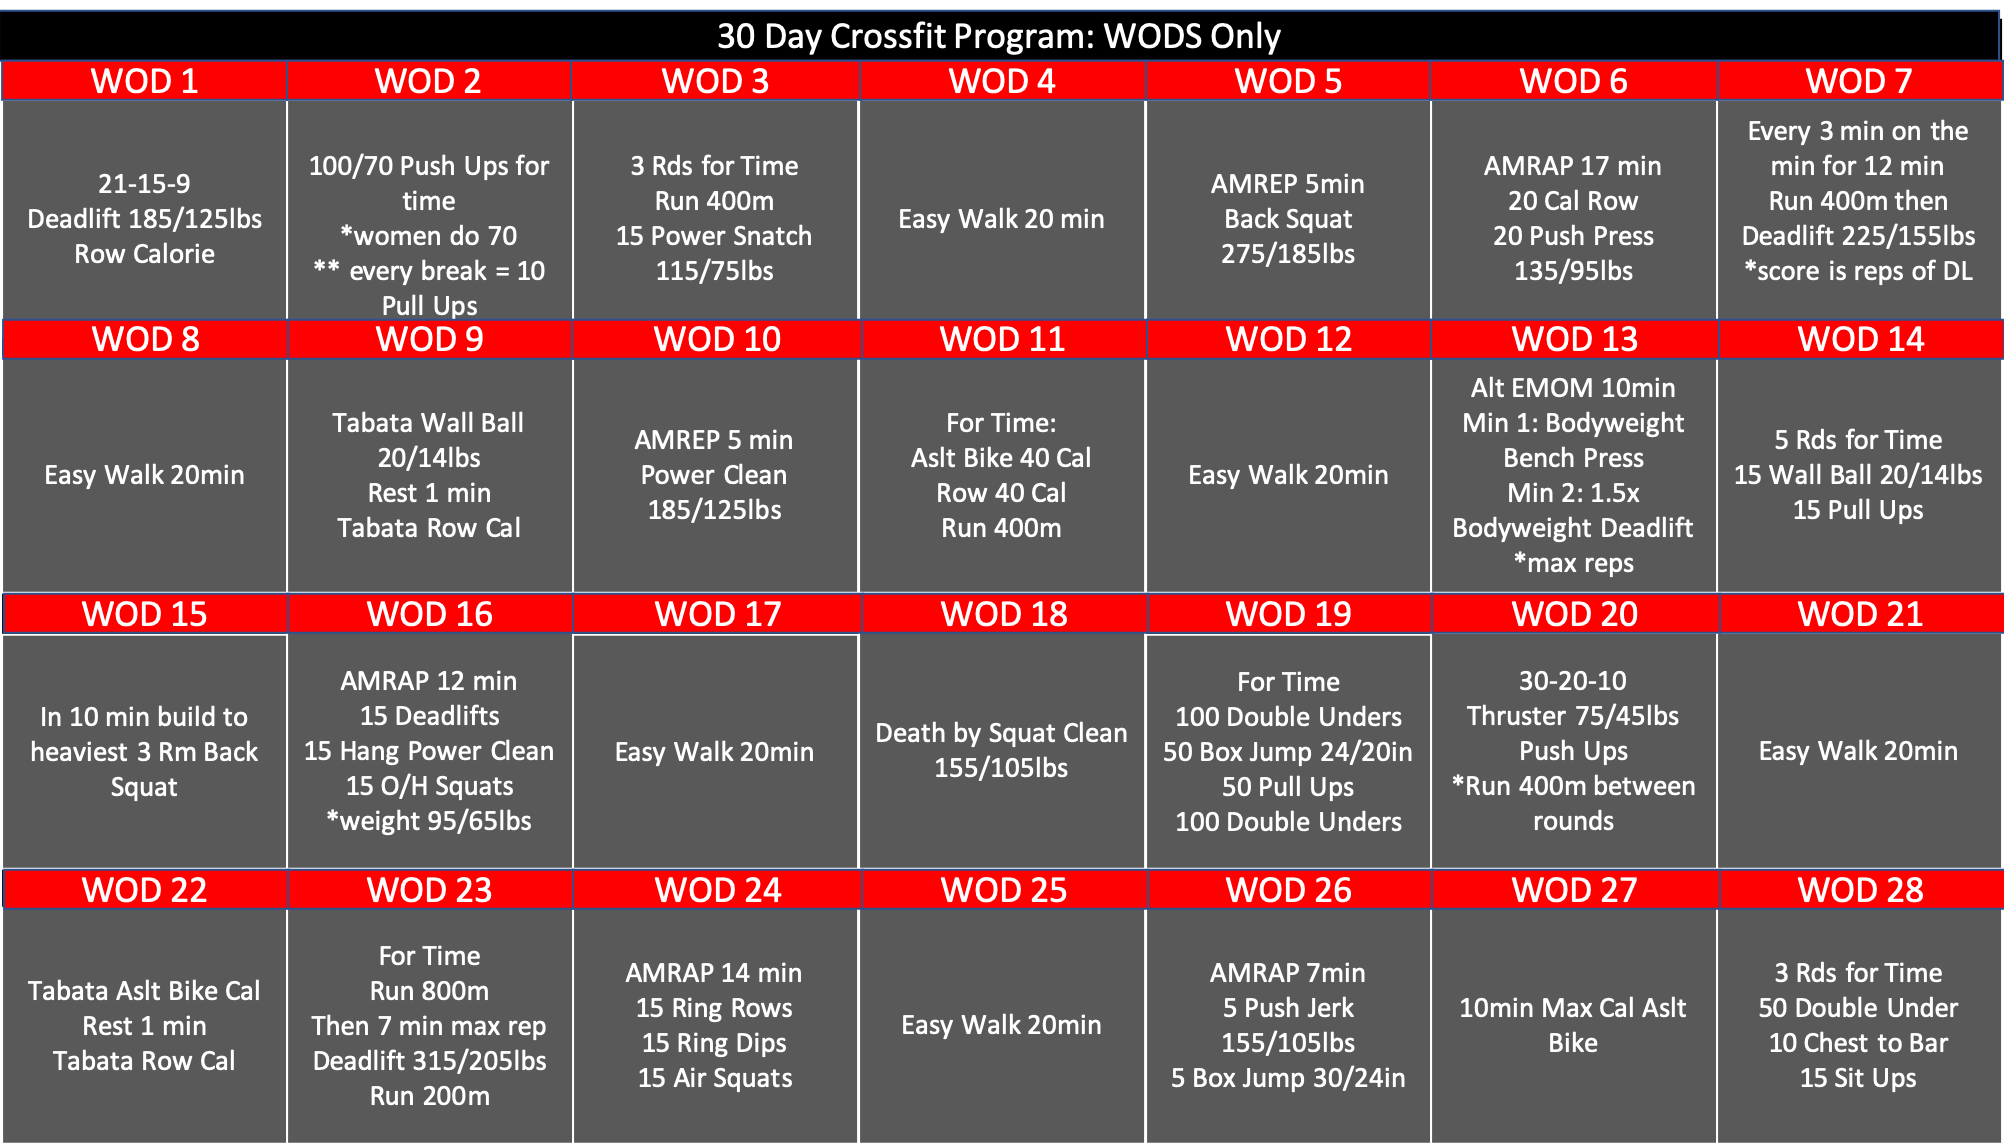 Weekly crossfit program